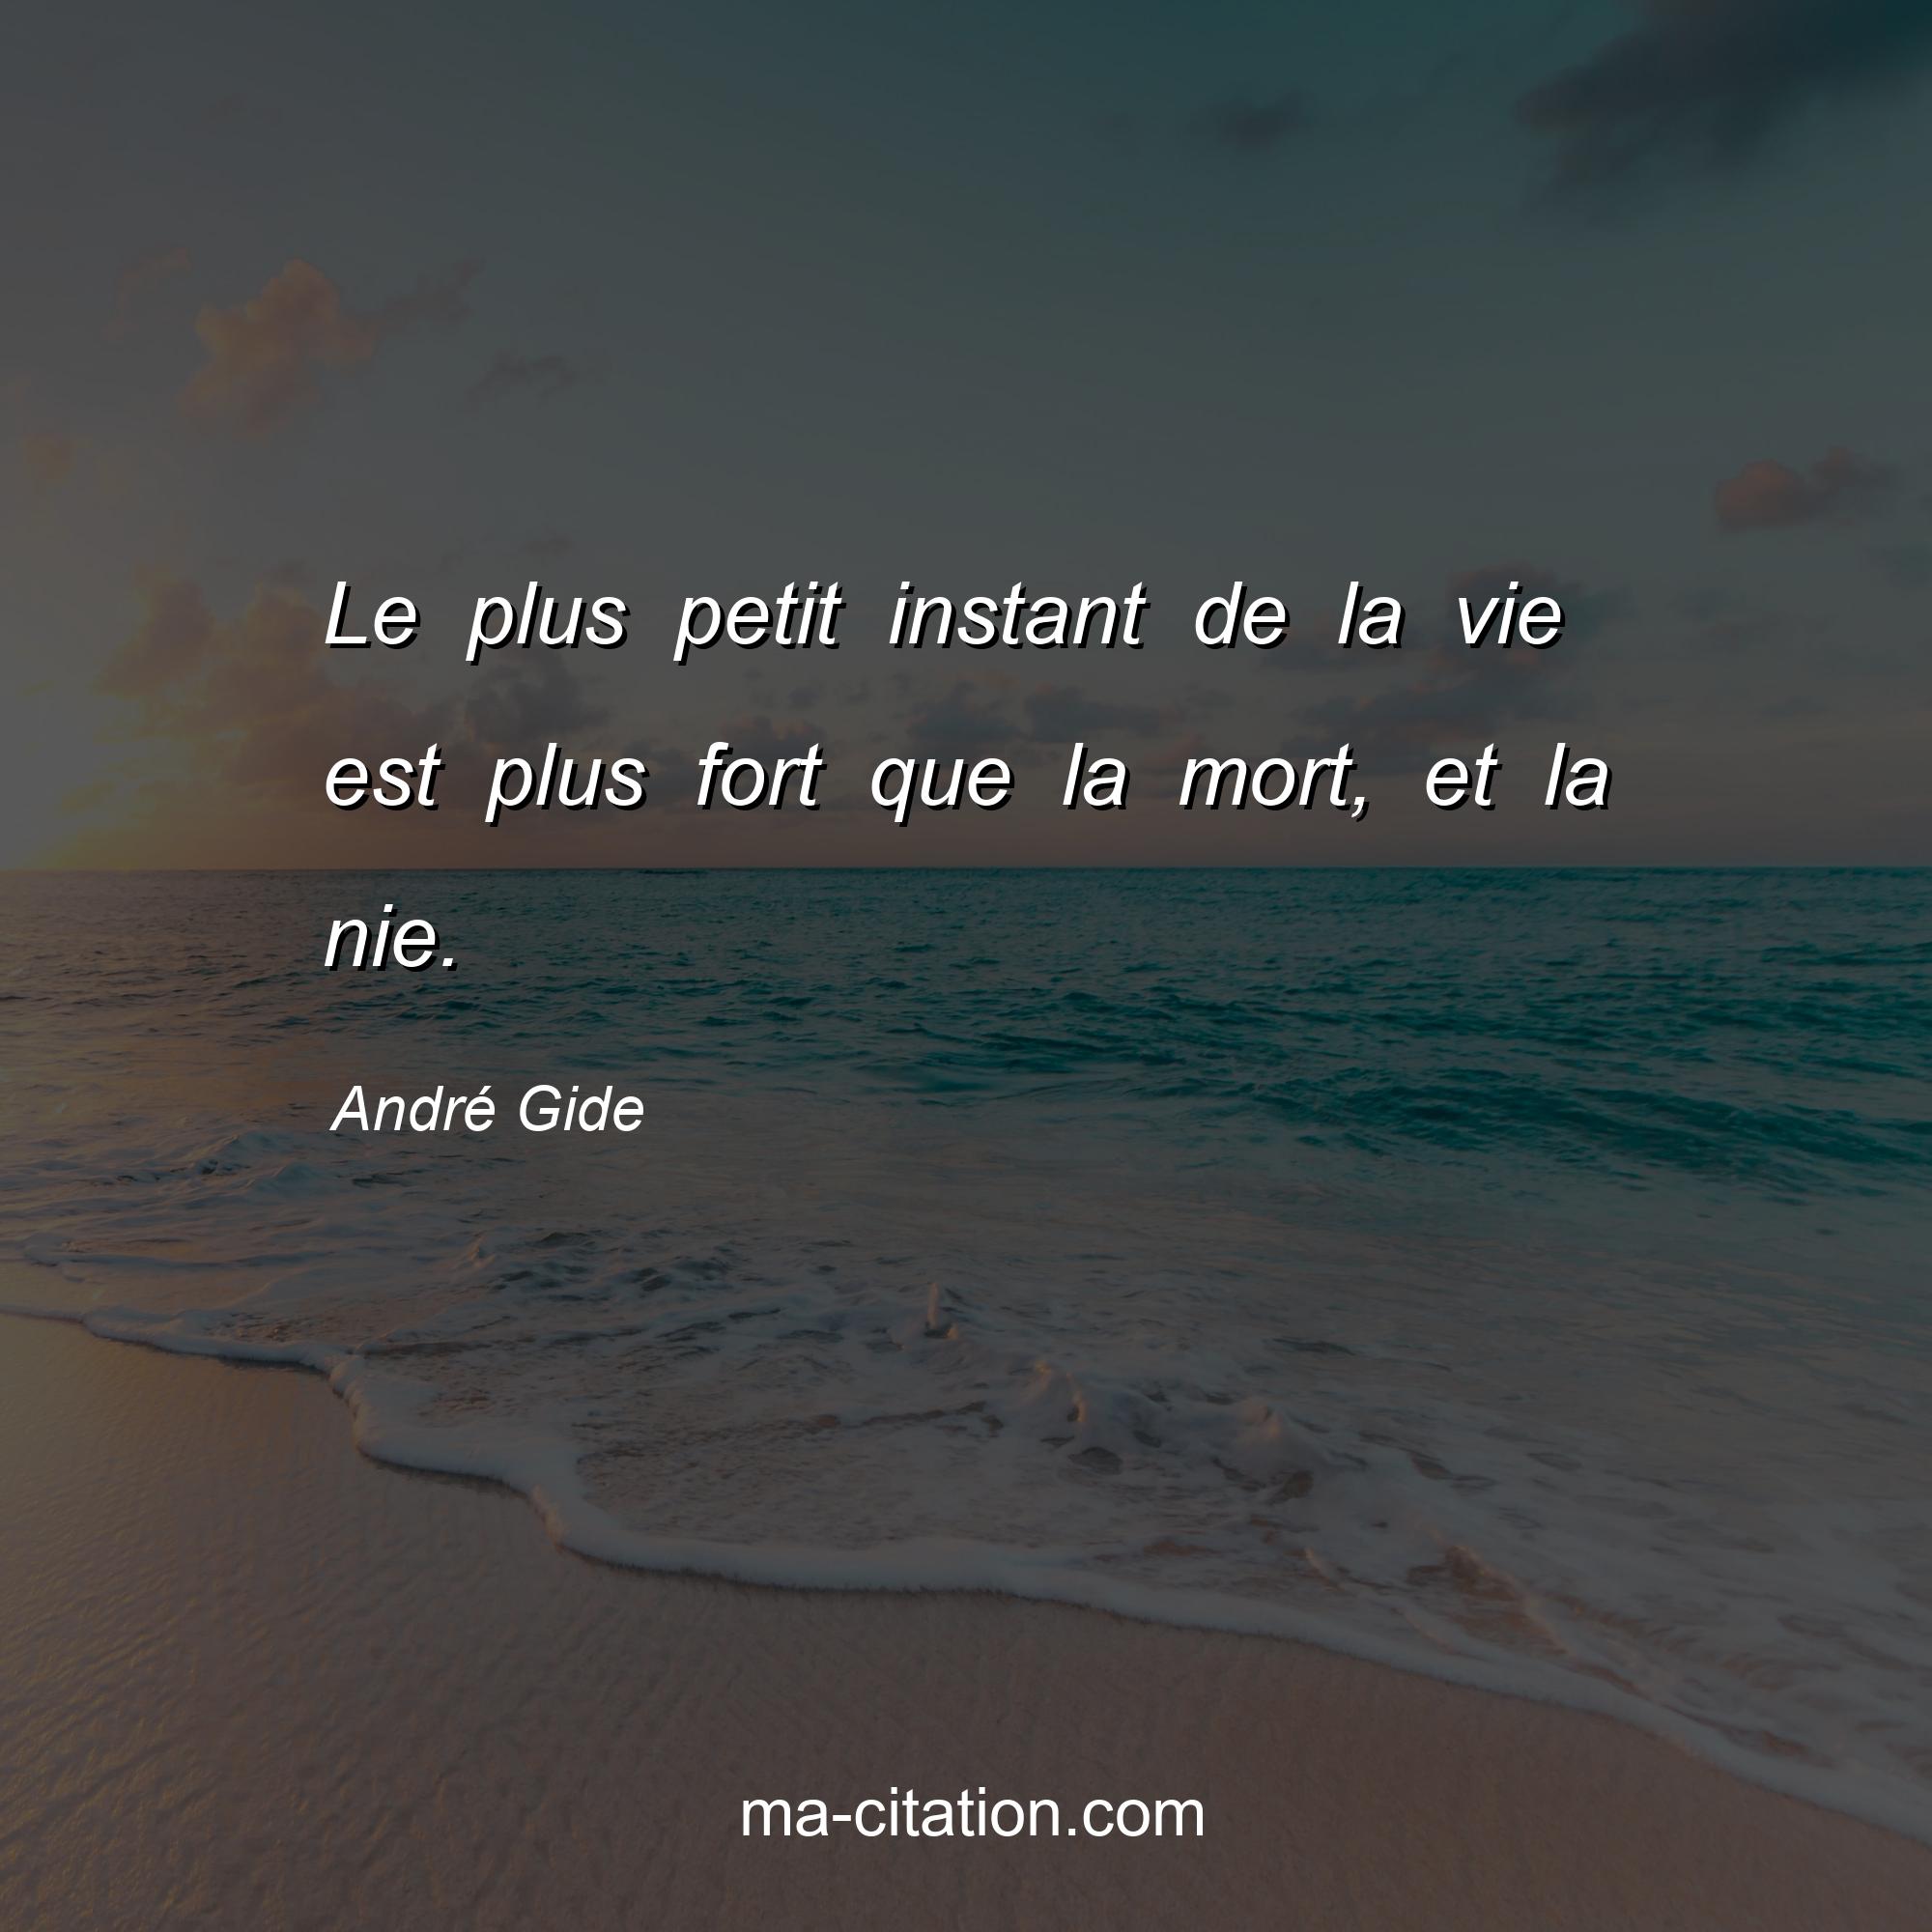 André Gide : Le plus petit instant de la vie est plus fort que la mort, et la nie.